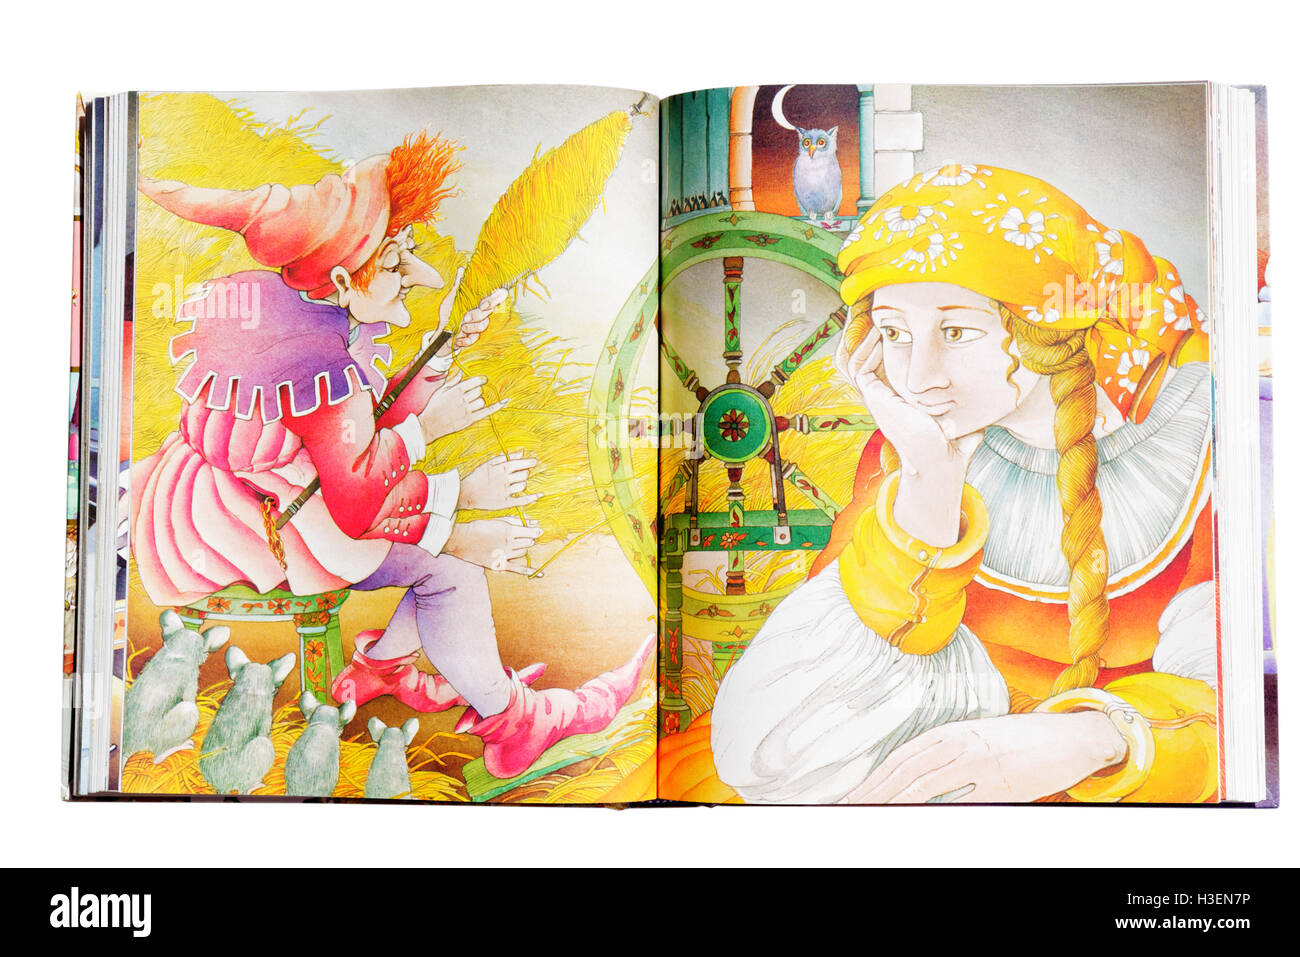 Une illustration de Rumpelstilzchen dans un livre de contes Banque D'Images